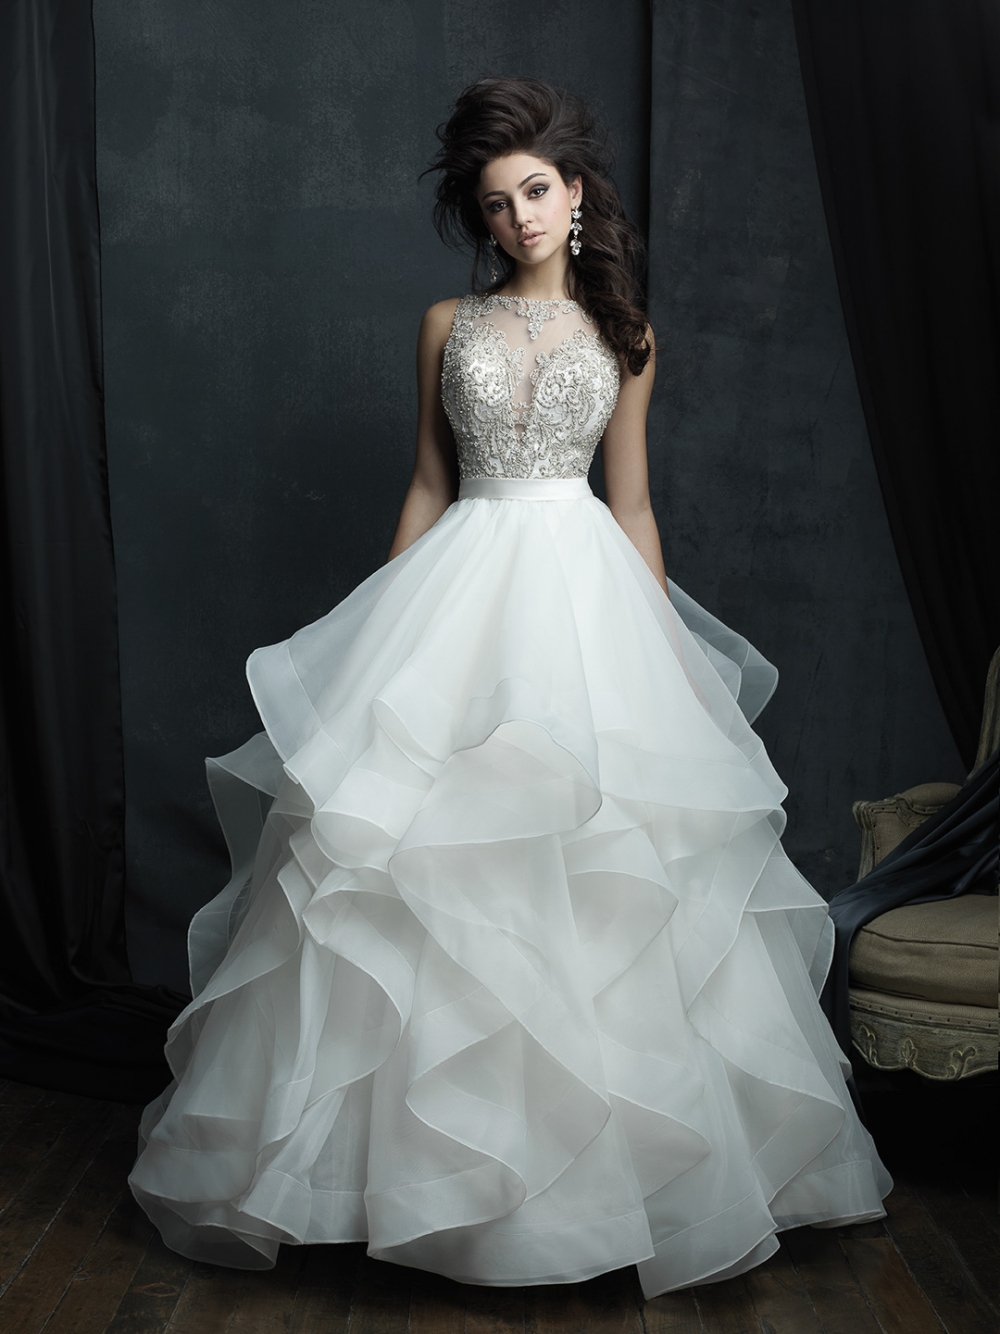 Пышное свадебное платье американского бренда Allure Bridals.

Эффектное свадебное платье с летящей многослойной юбкой с волнами. Лиф украшен бисером, кристаллами и серебряным плетением.